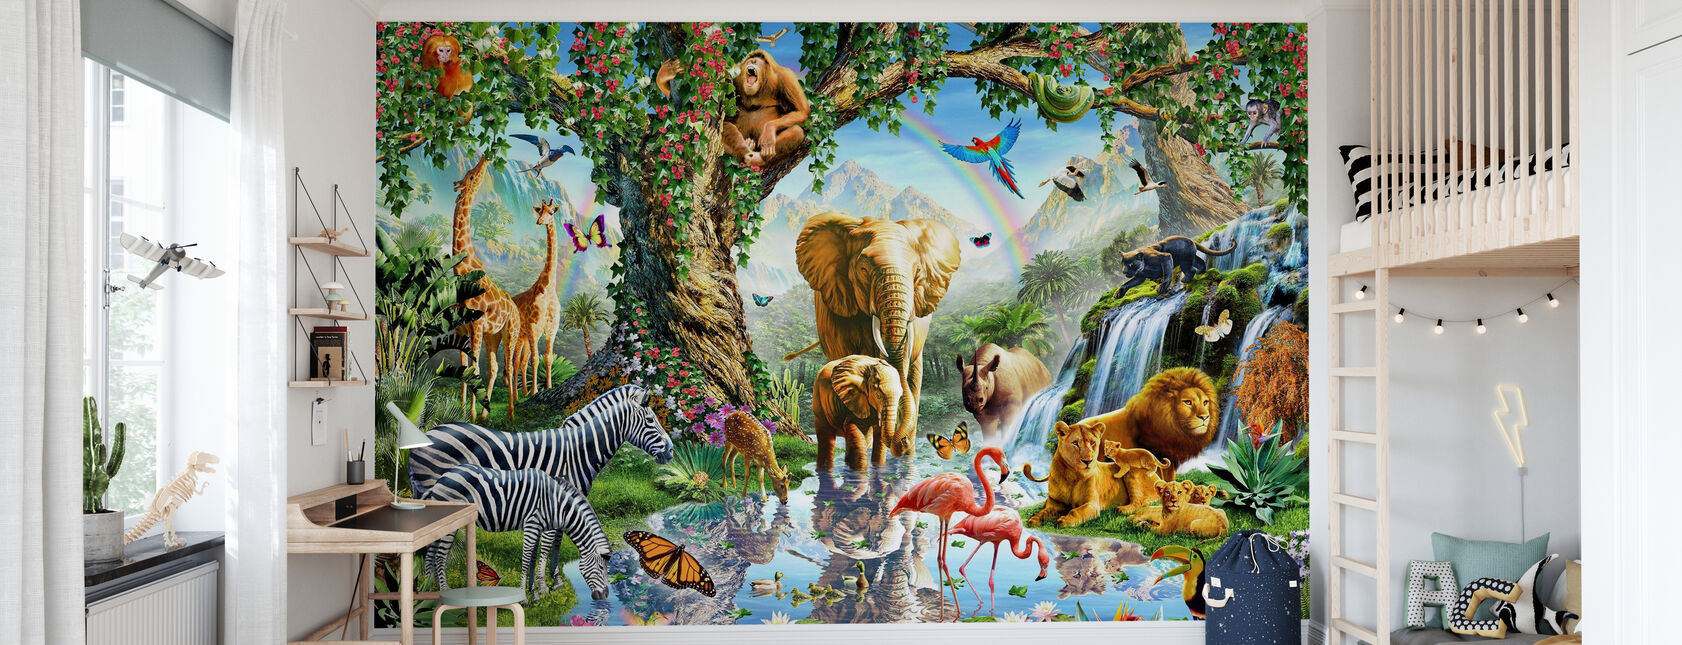 Jungle Lake avec des animaux sauvages - Papier peint - Chambre des enfants